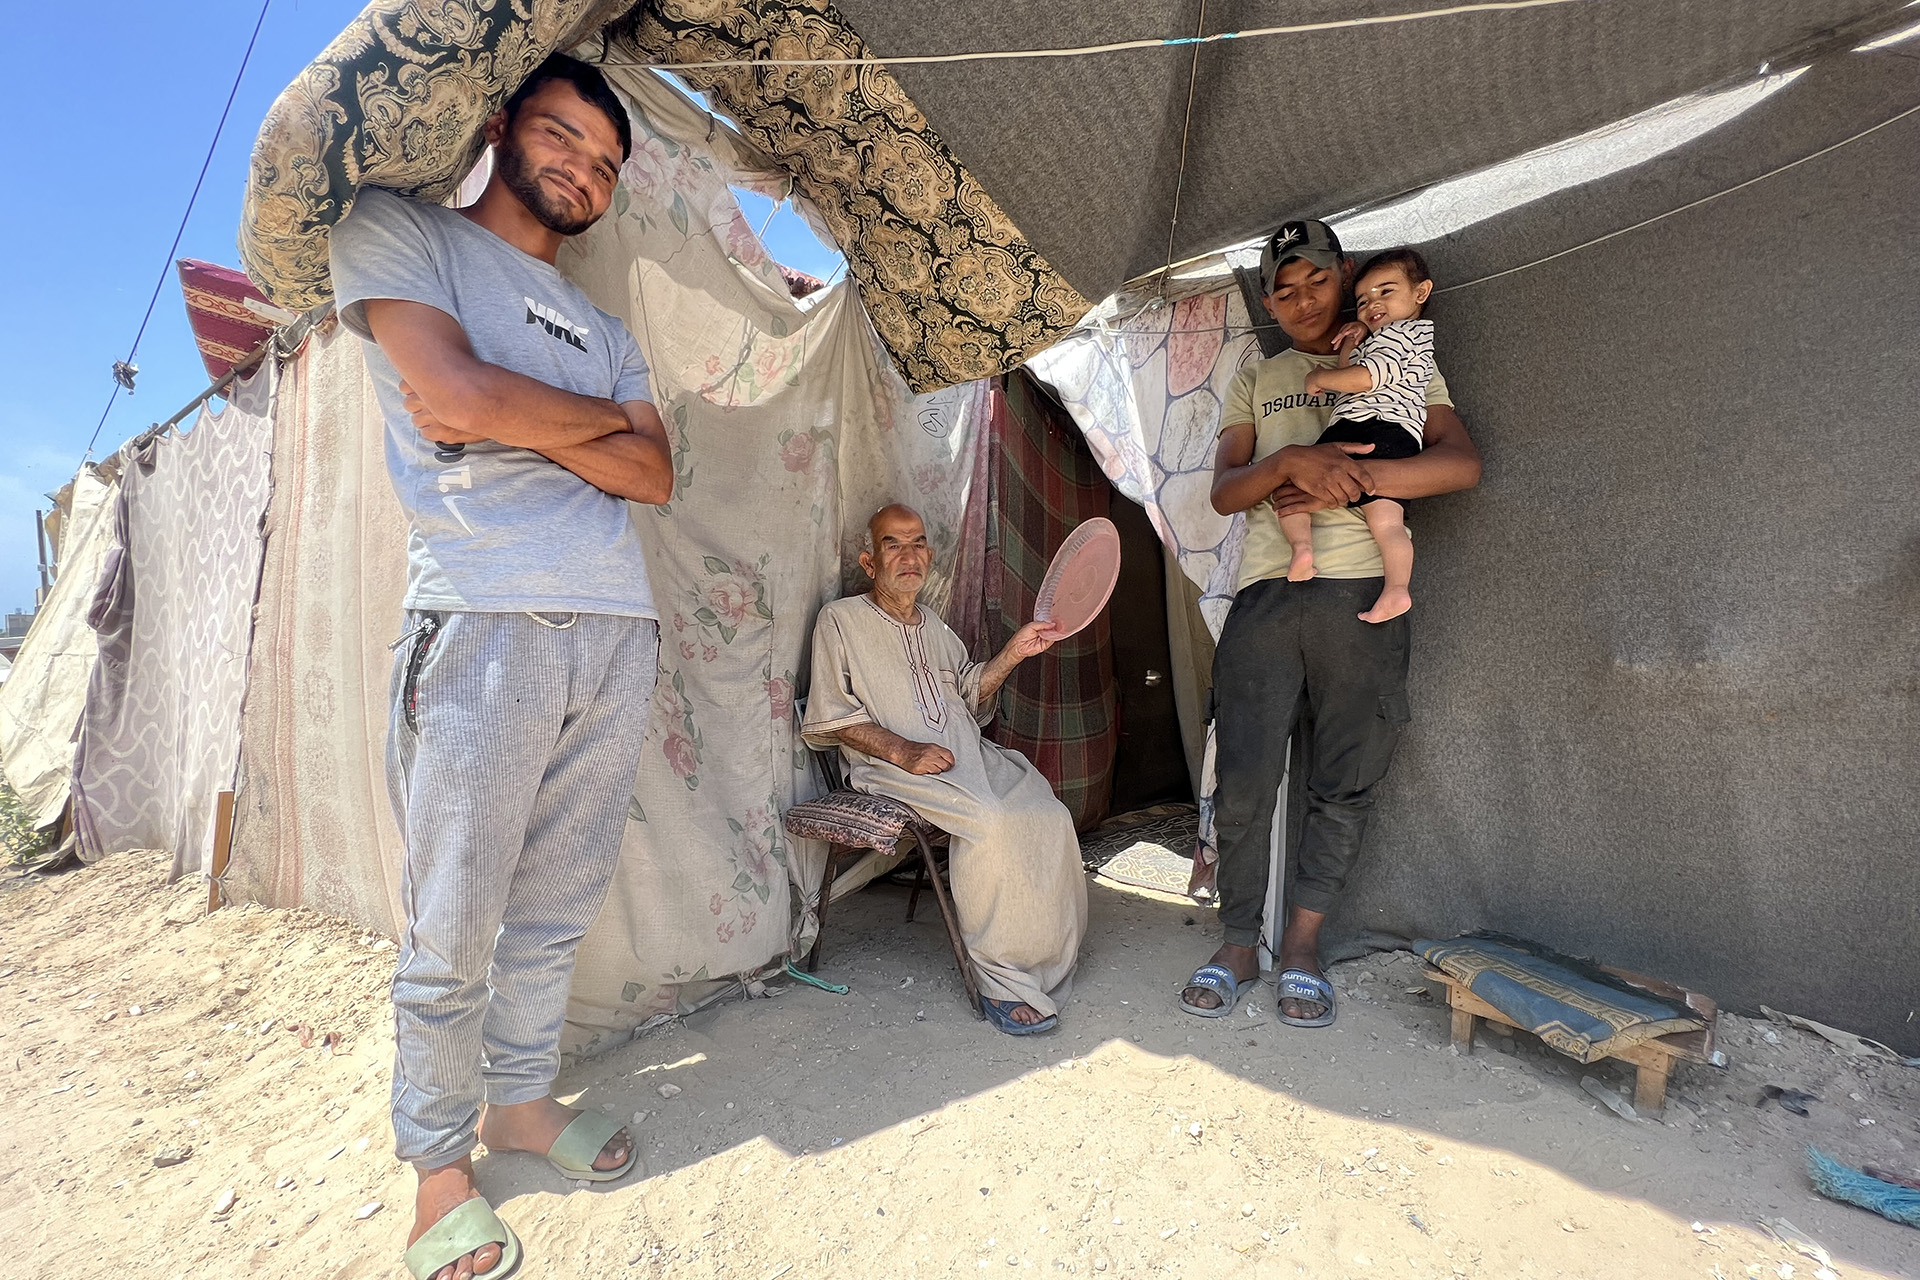 Canicule transforme les tentes à Gaza en fours mortels